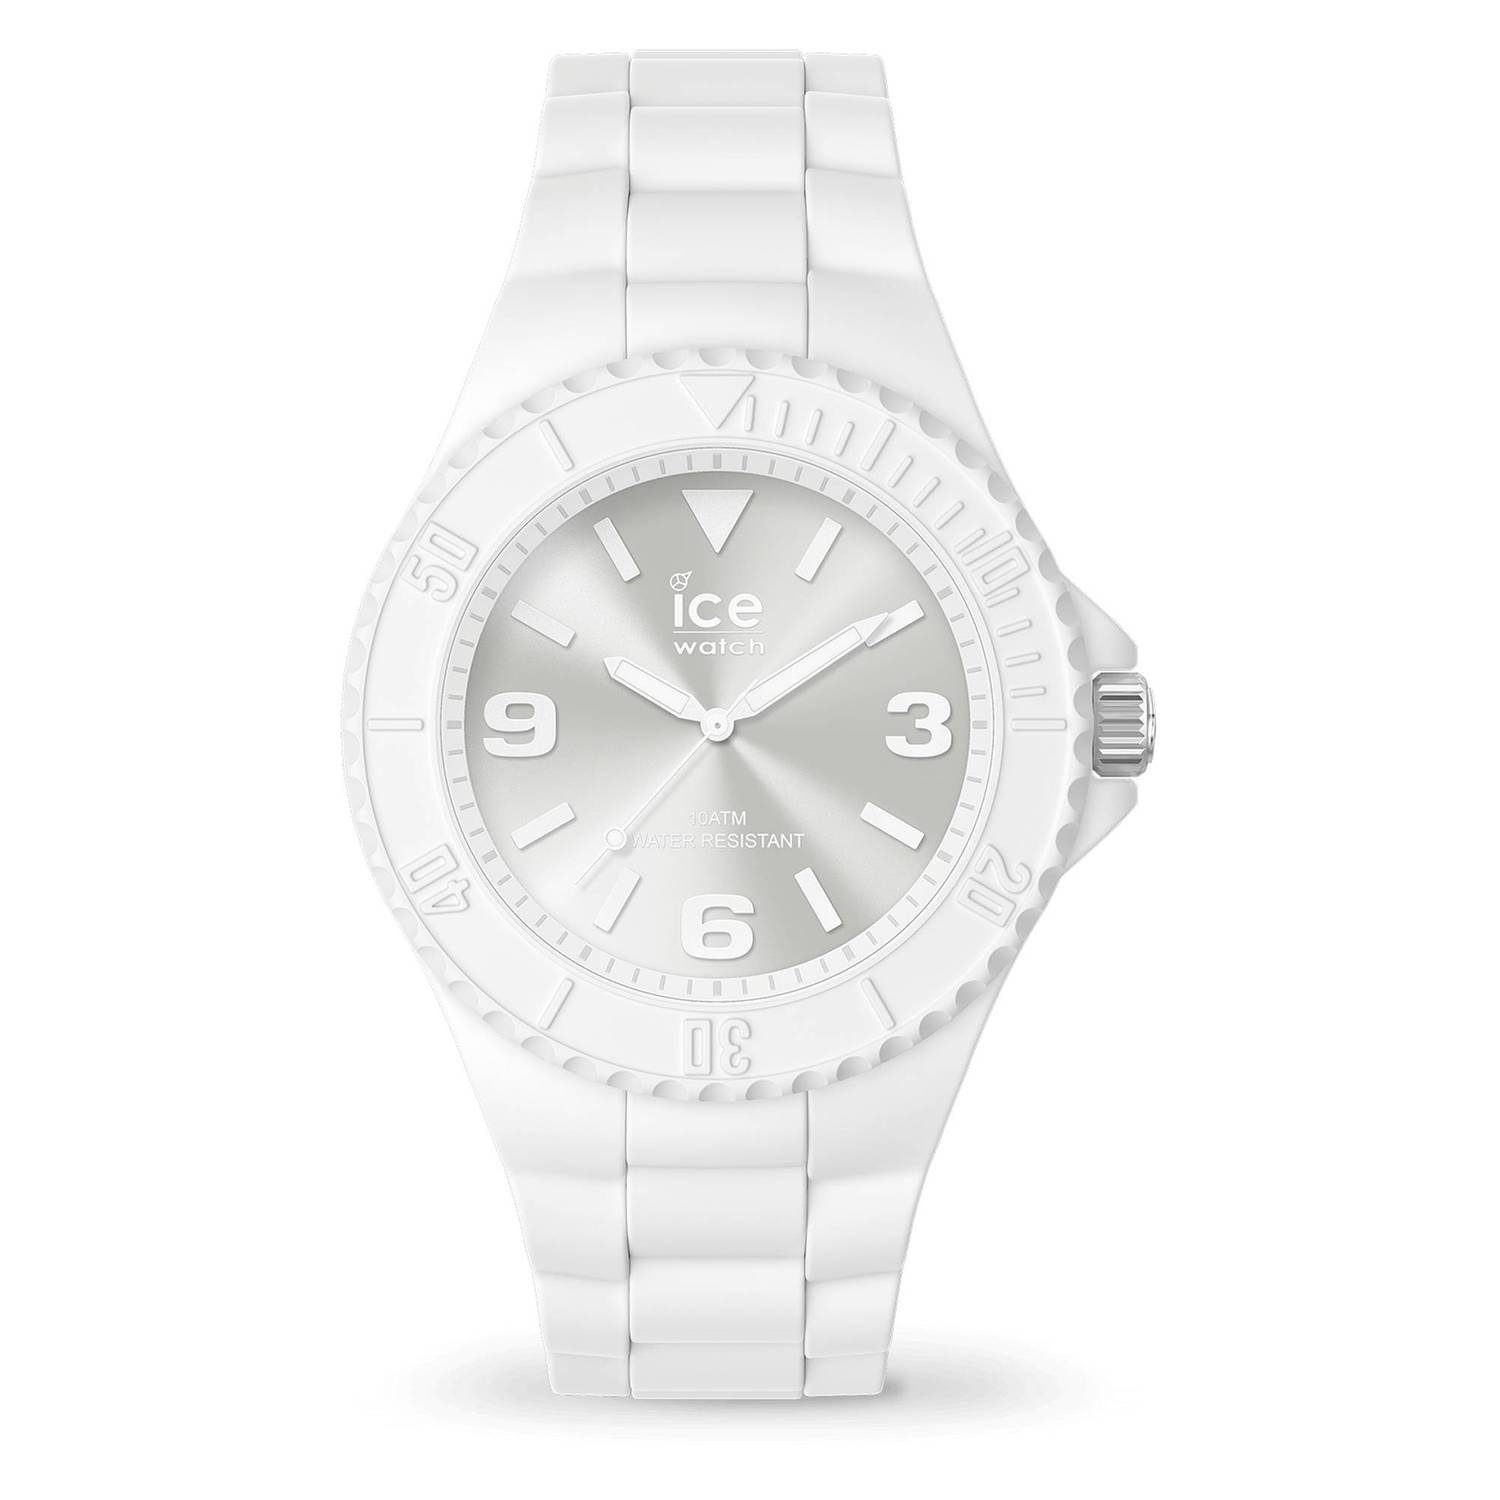 Quarzuhr ICE generation - weiß ice-watch White